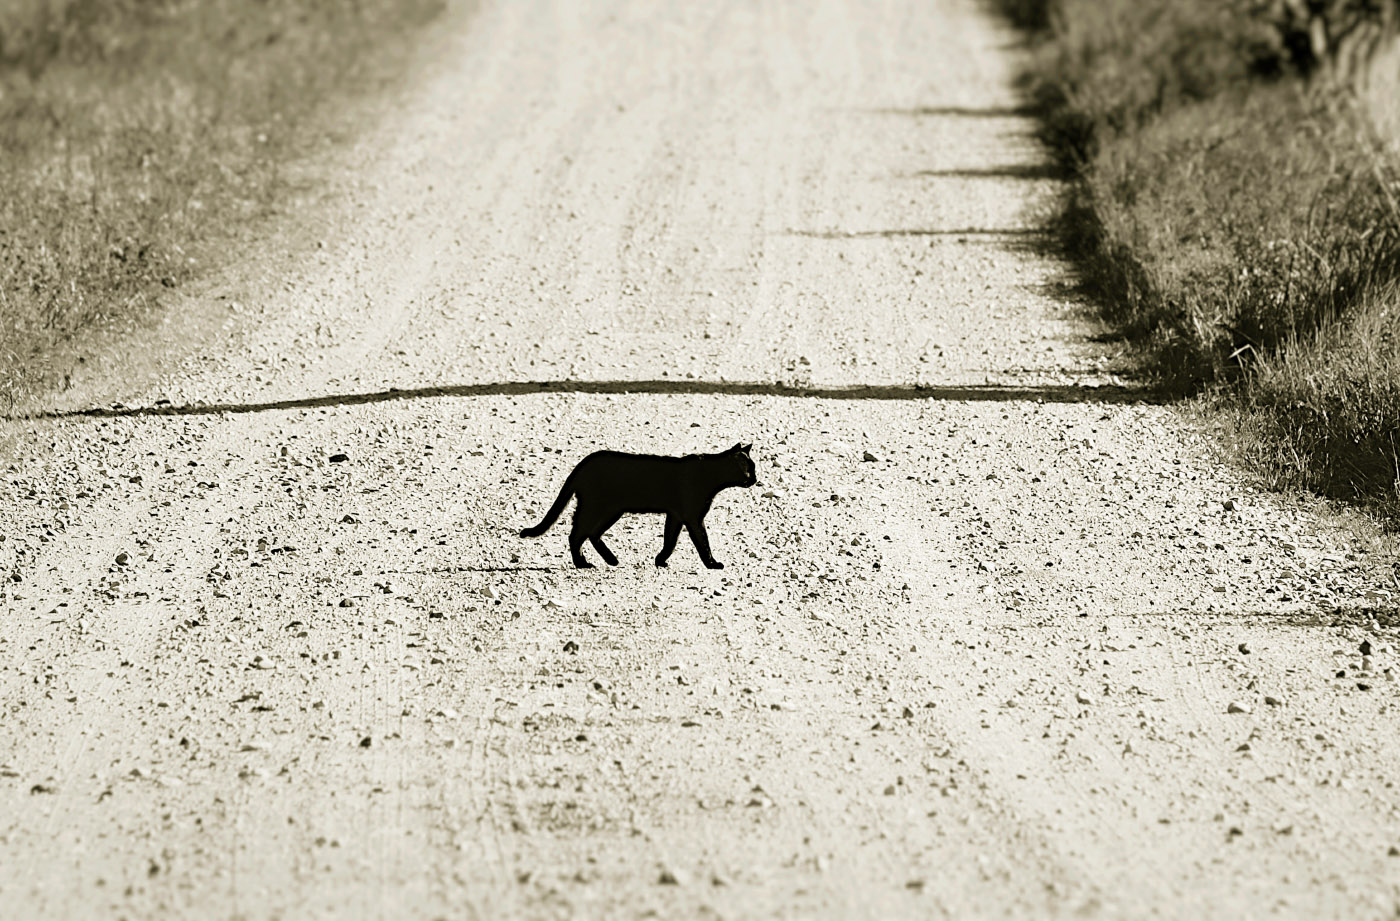 Плохая примета картинки. Чёрная кошка перебежала дорогу. Чёрный кот перебежал дорогу. Черная кошка перебегает дорогу. Примета черная кошка перебежала дорогу.